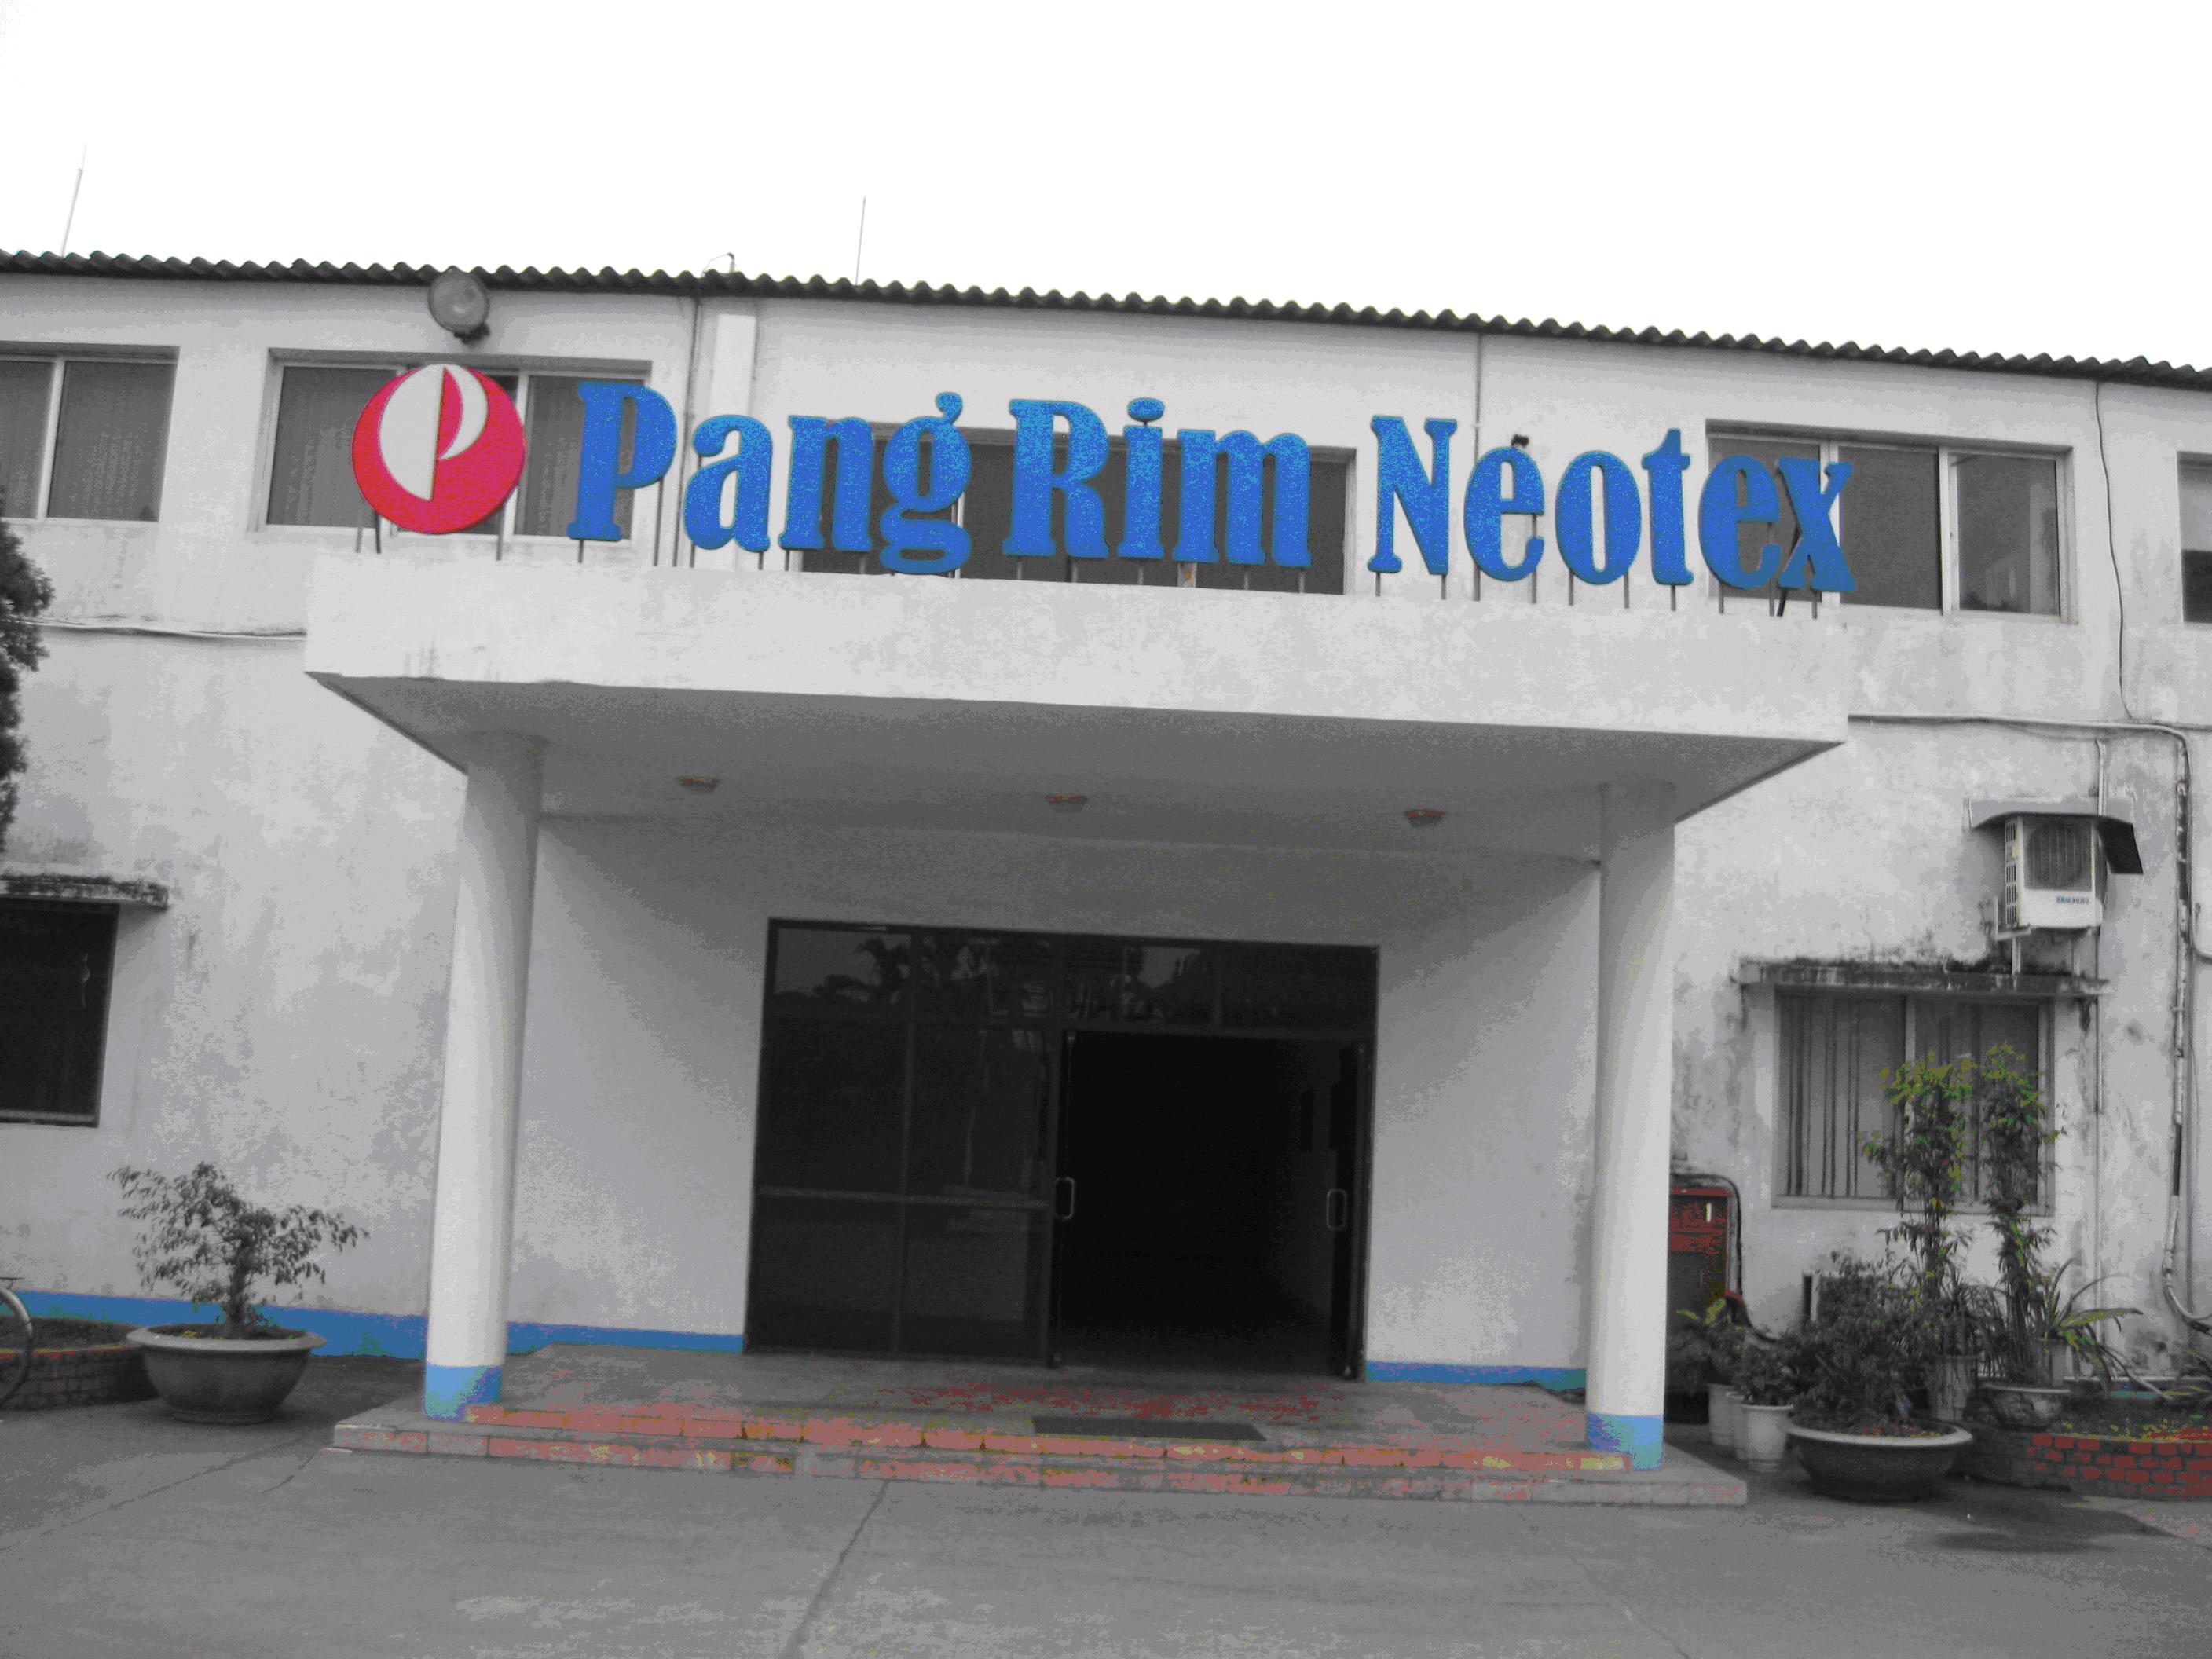 Công ty TNHH Sông Hàn vừa hoàn thành việc bảo trì, bảo dưỡng và nâng cấp hệ thống camera giám sát cho Công ty TNHH Pangrim Neotex tại Phường Bến Gót- TP Việt Trì- Tỉnh Phú Thọ.